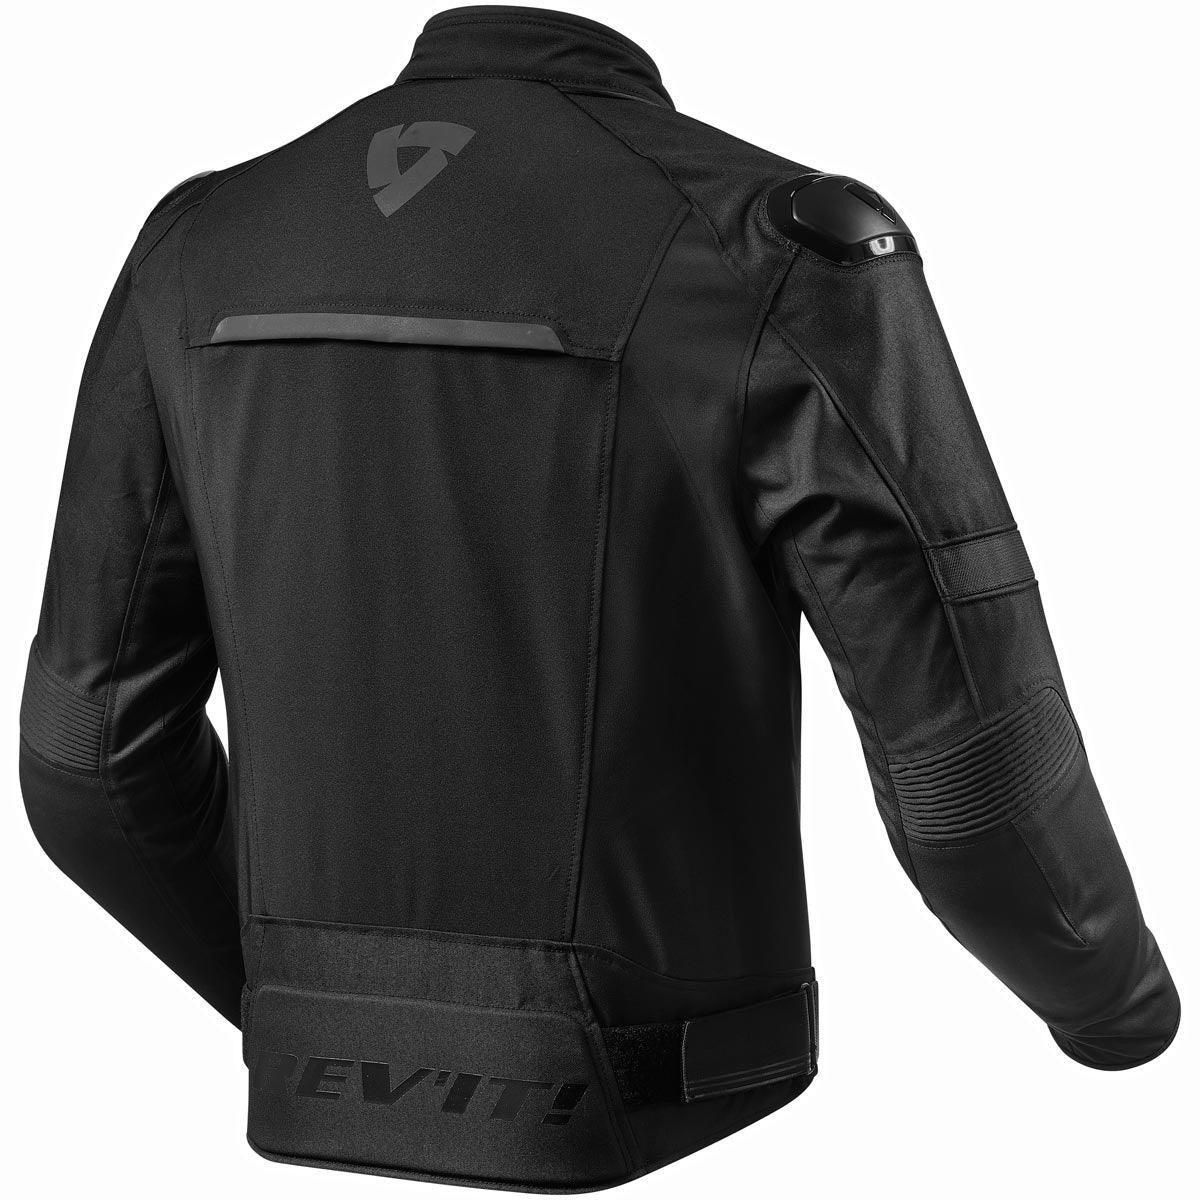 Rev It! Shift Jacket WP Black - Motorcycle Clothing